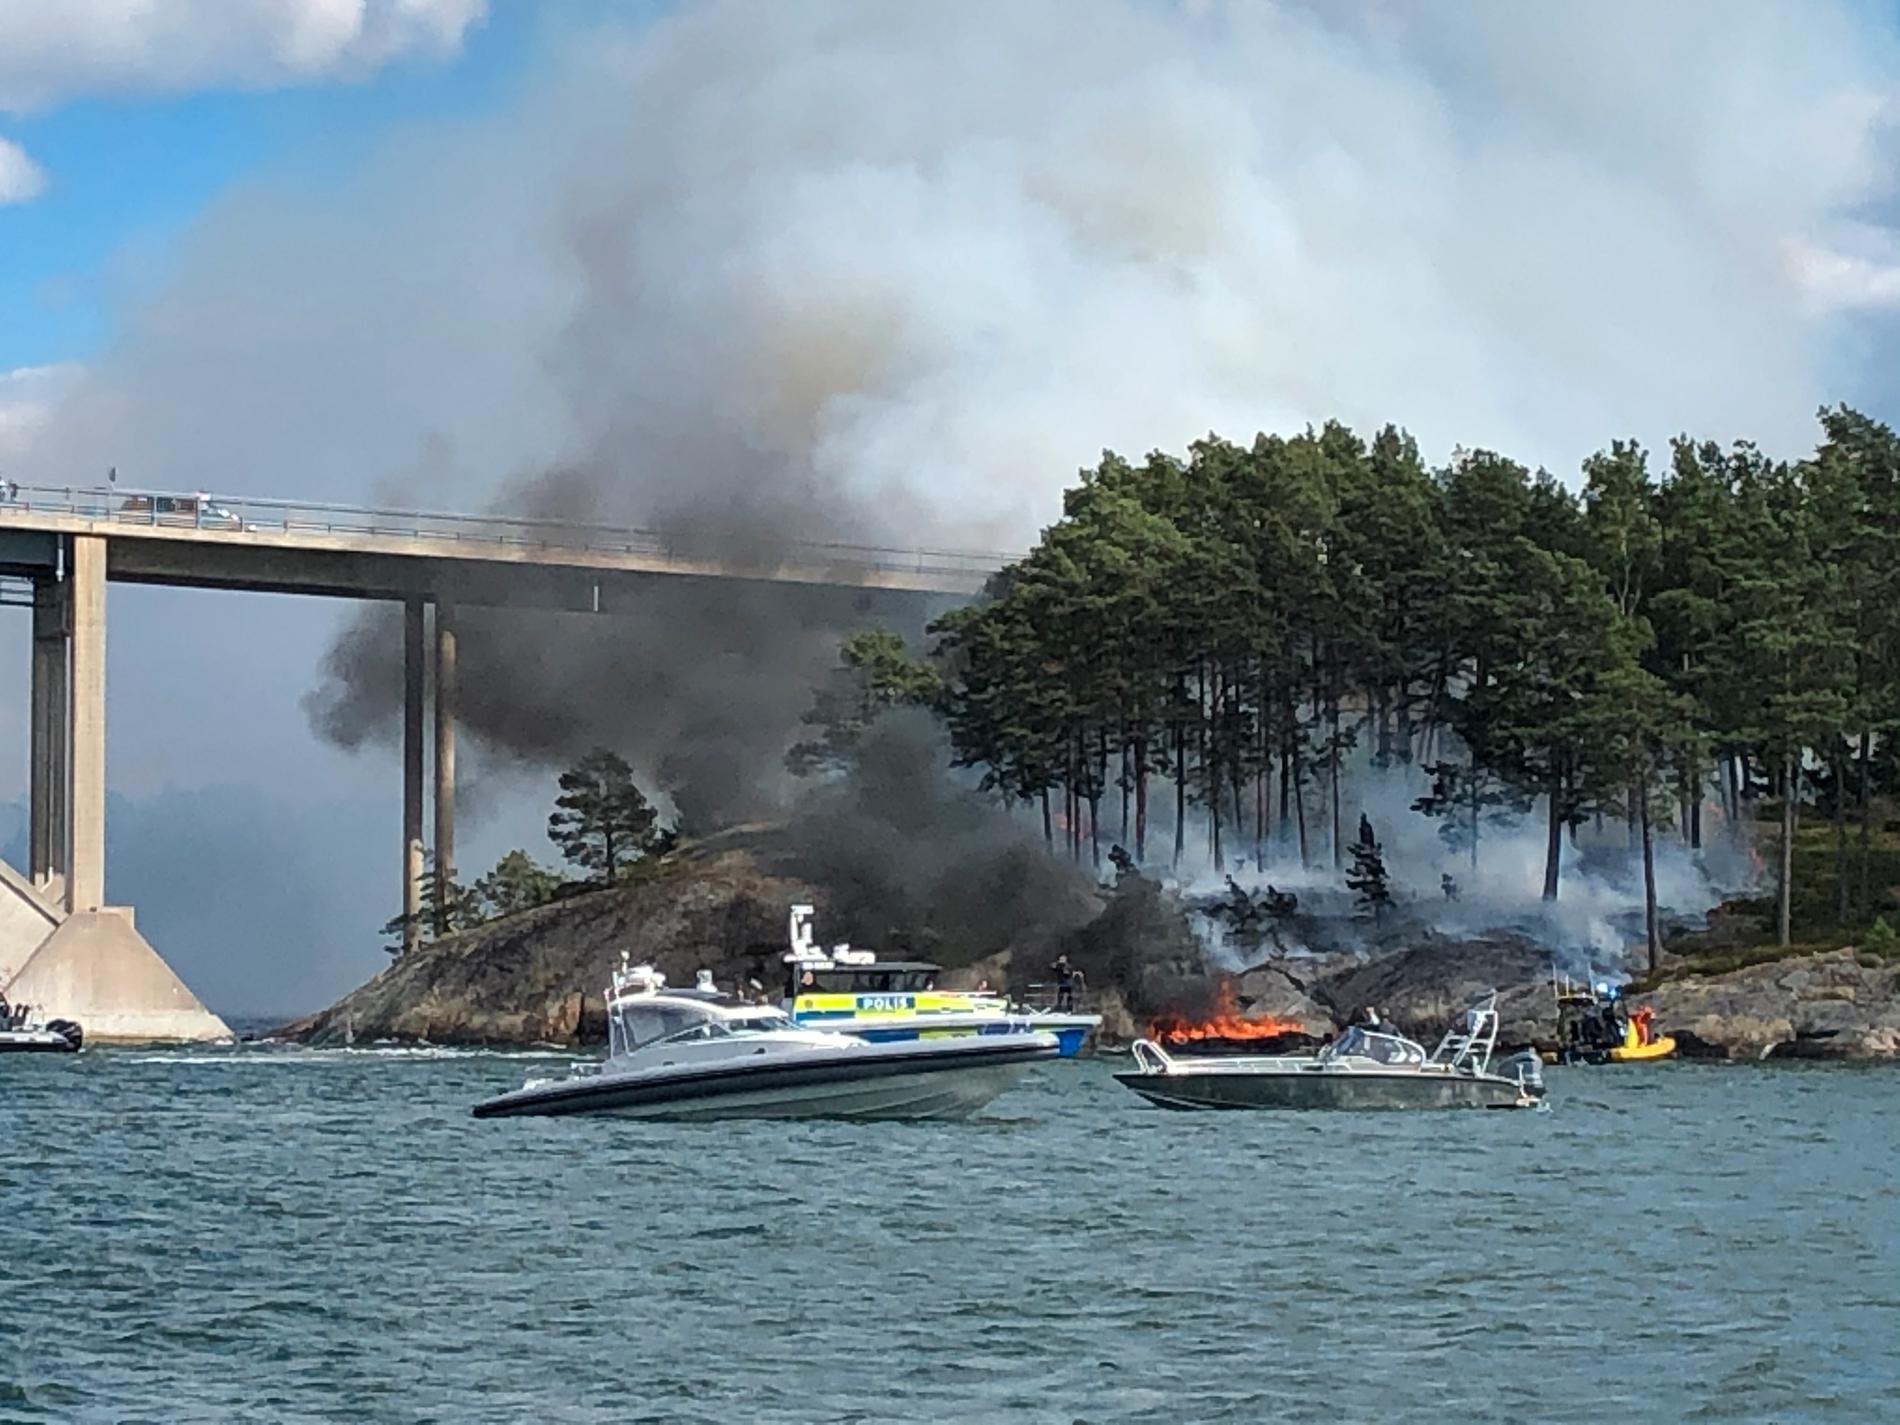 En fullt utvecklad brand har startat i en båt vid Djuröbron